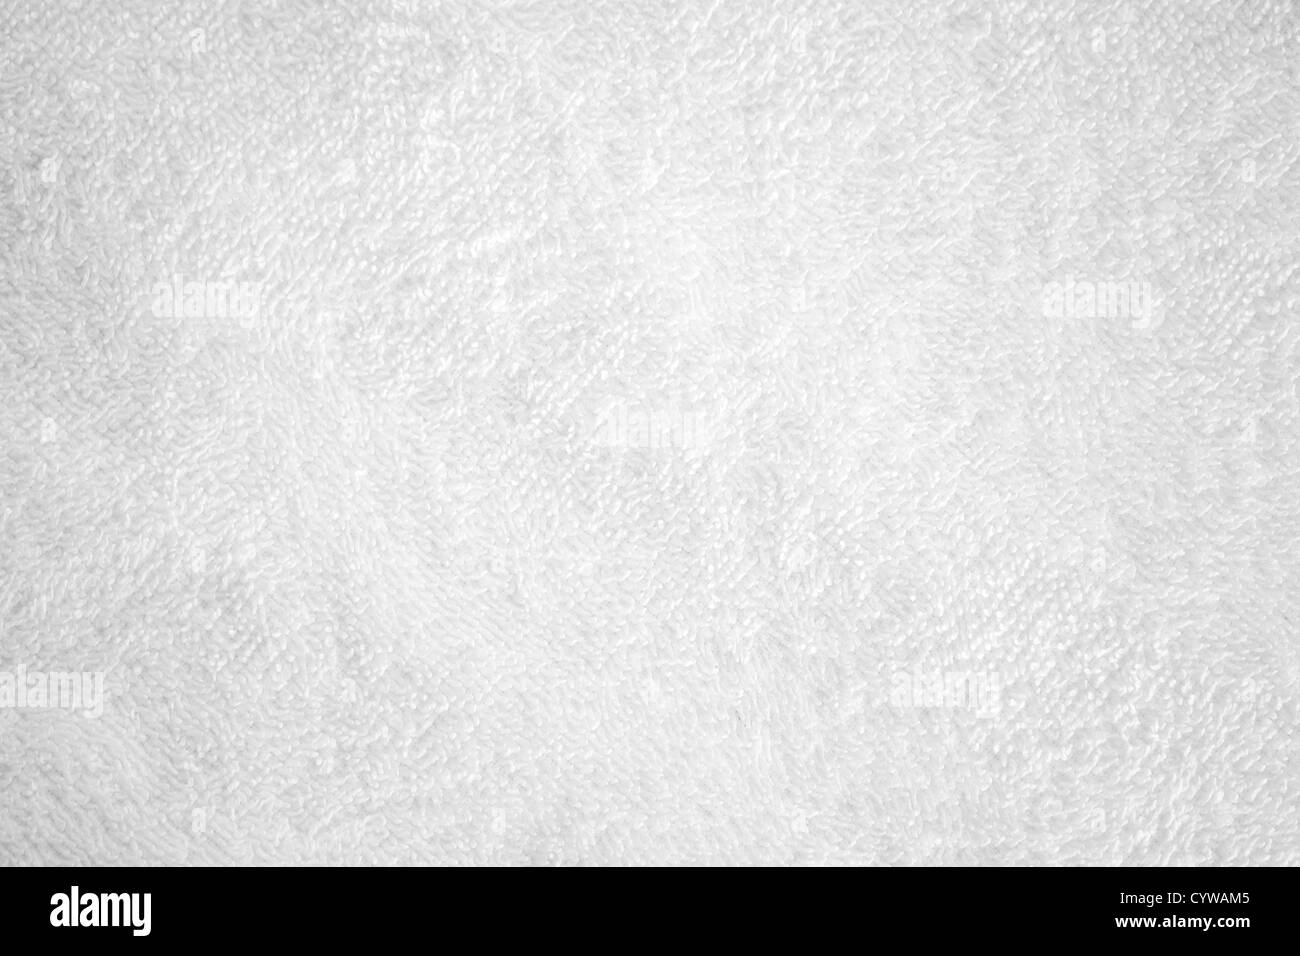 Weiße Baumwolle Handtuch Closeup Hintergrundtextur Stockfoto